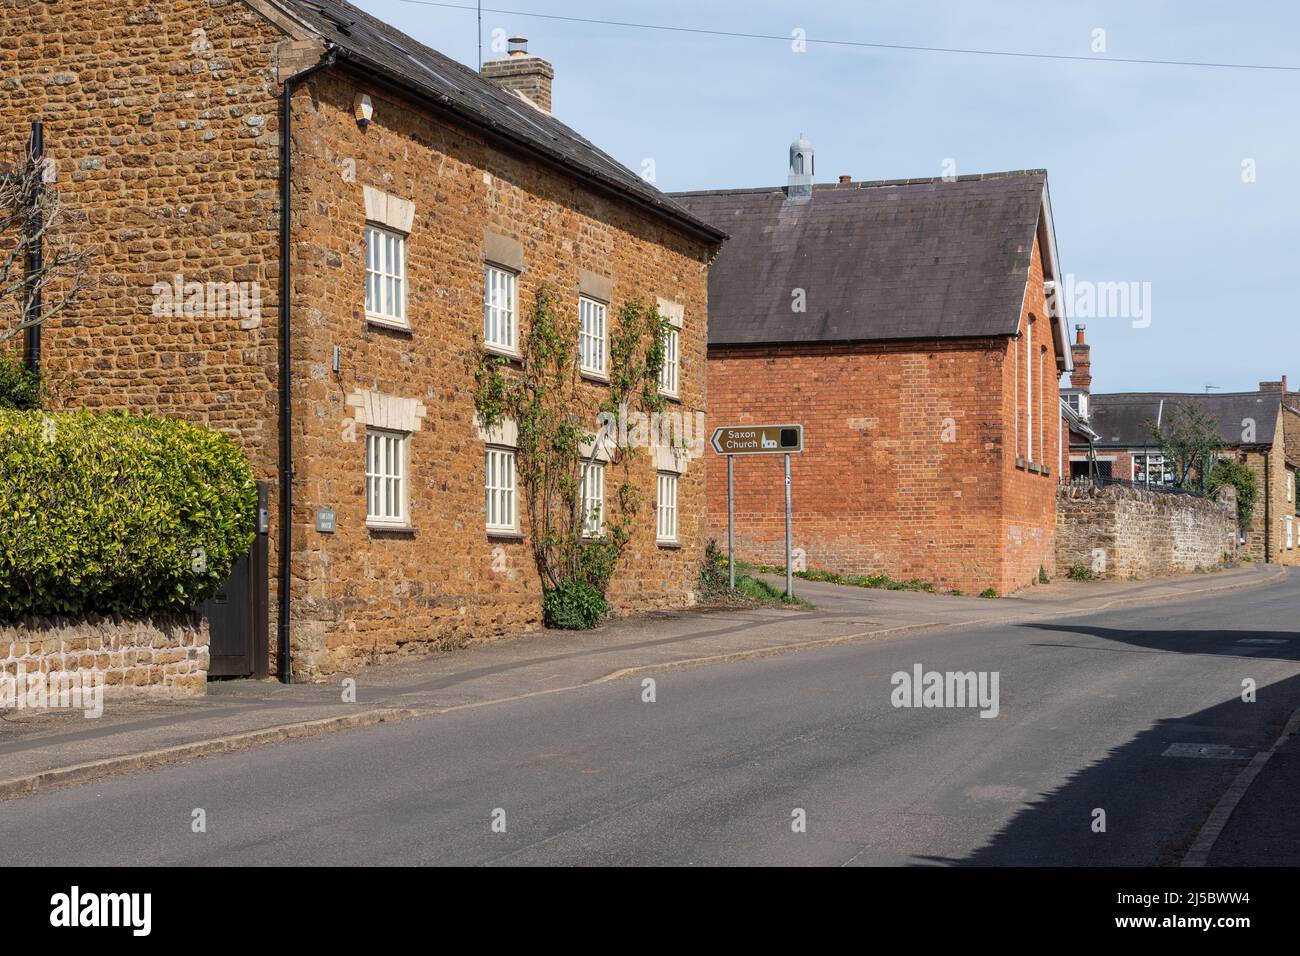 Scena di strada con vecchi cottage in pietra nel villaggio di Brixworth, Northamptonshire, Regno Unito Foto Stock